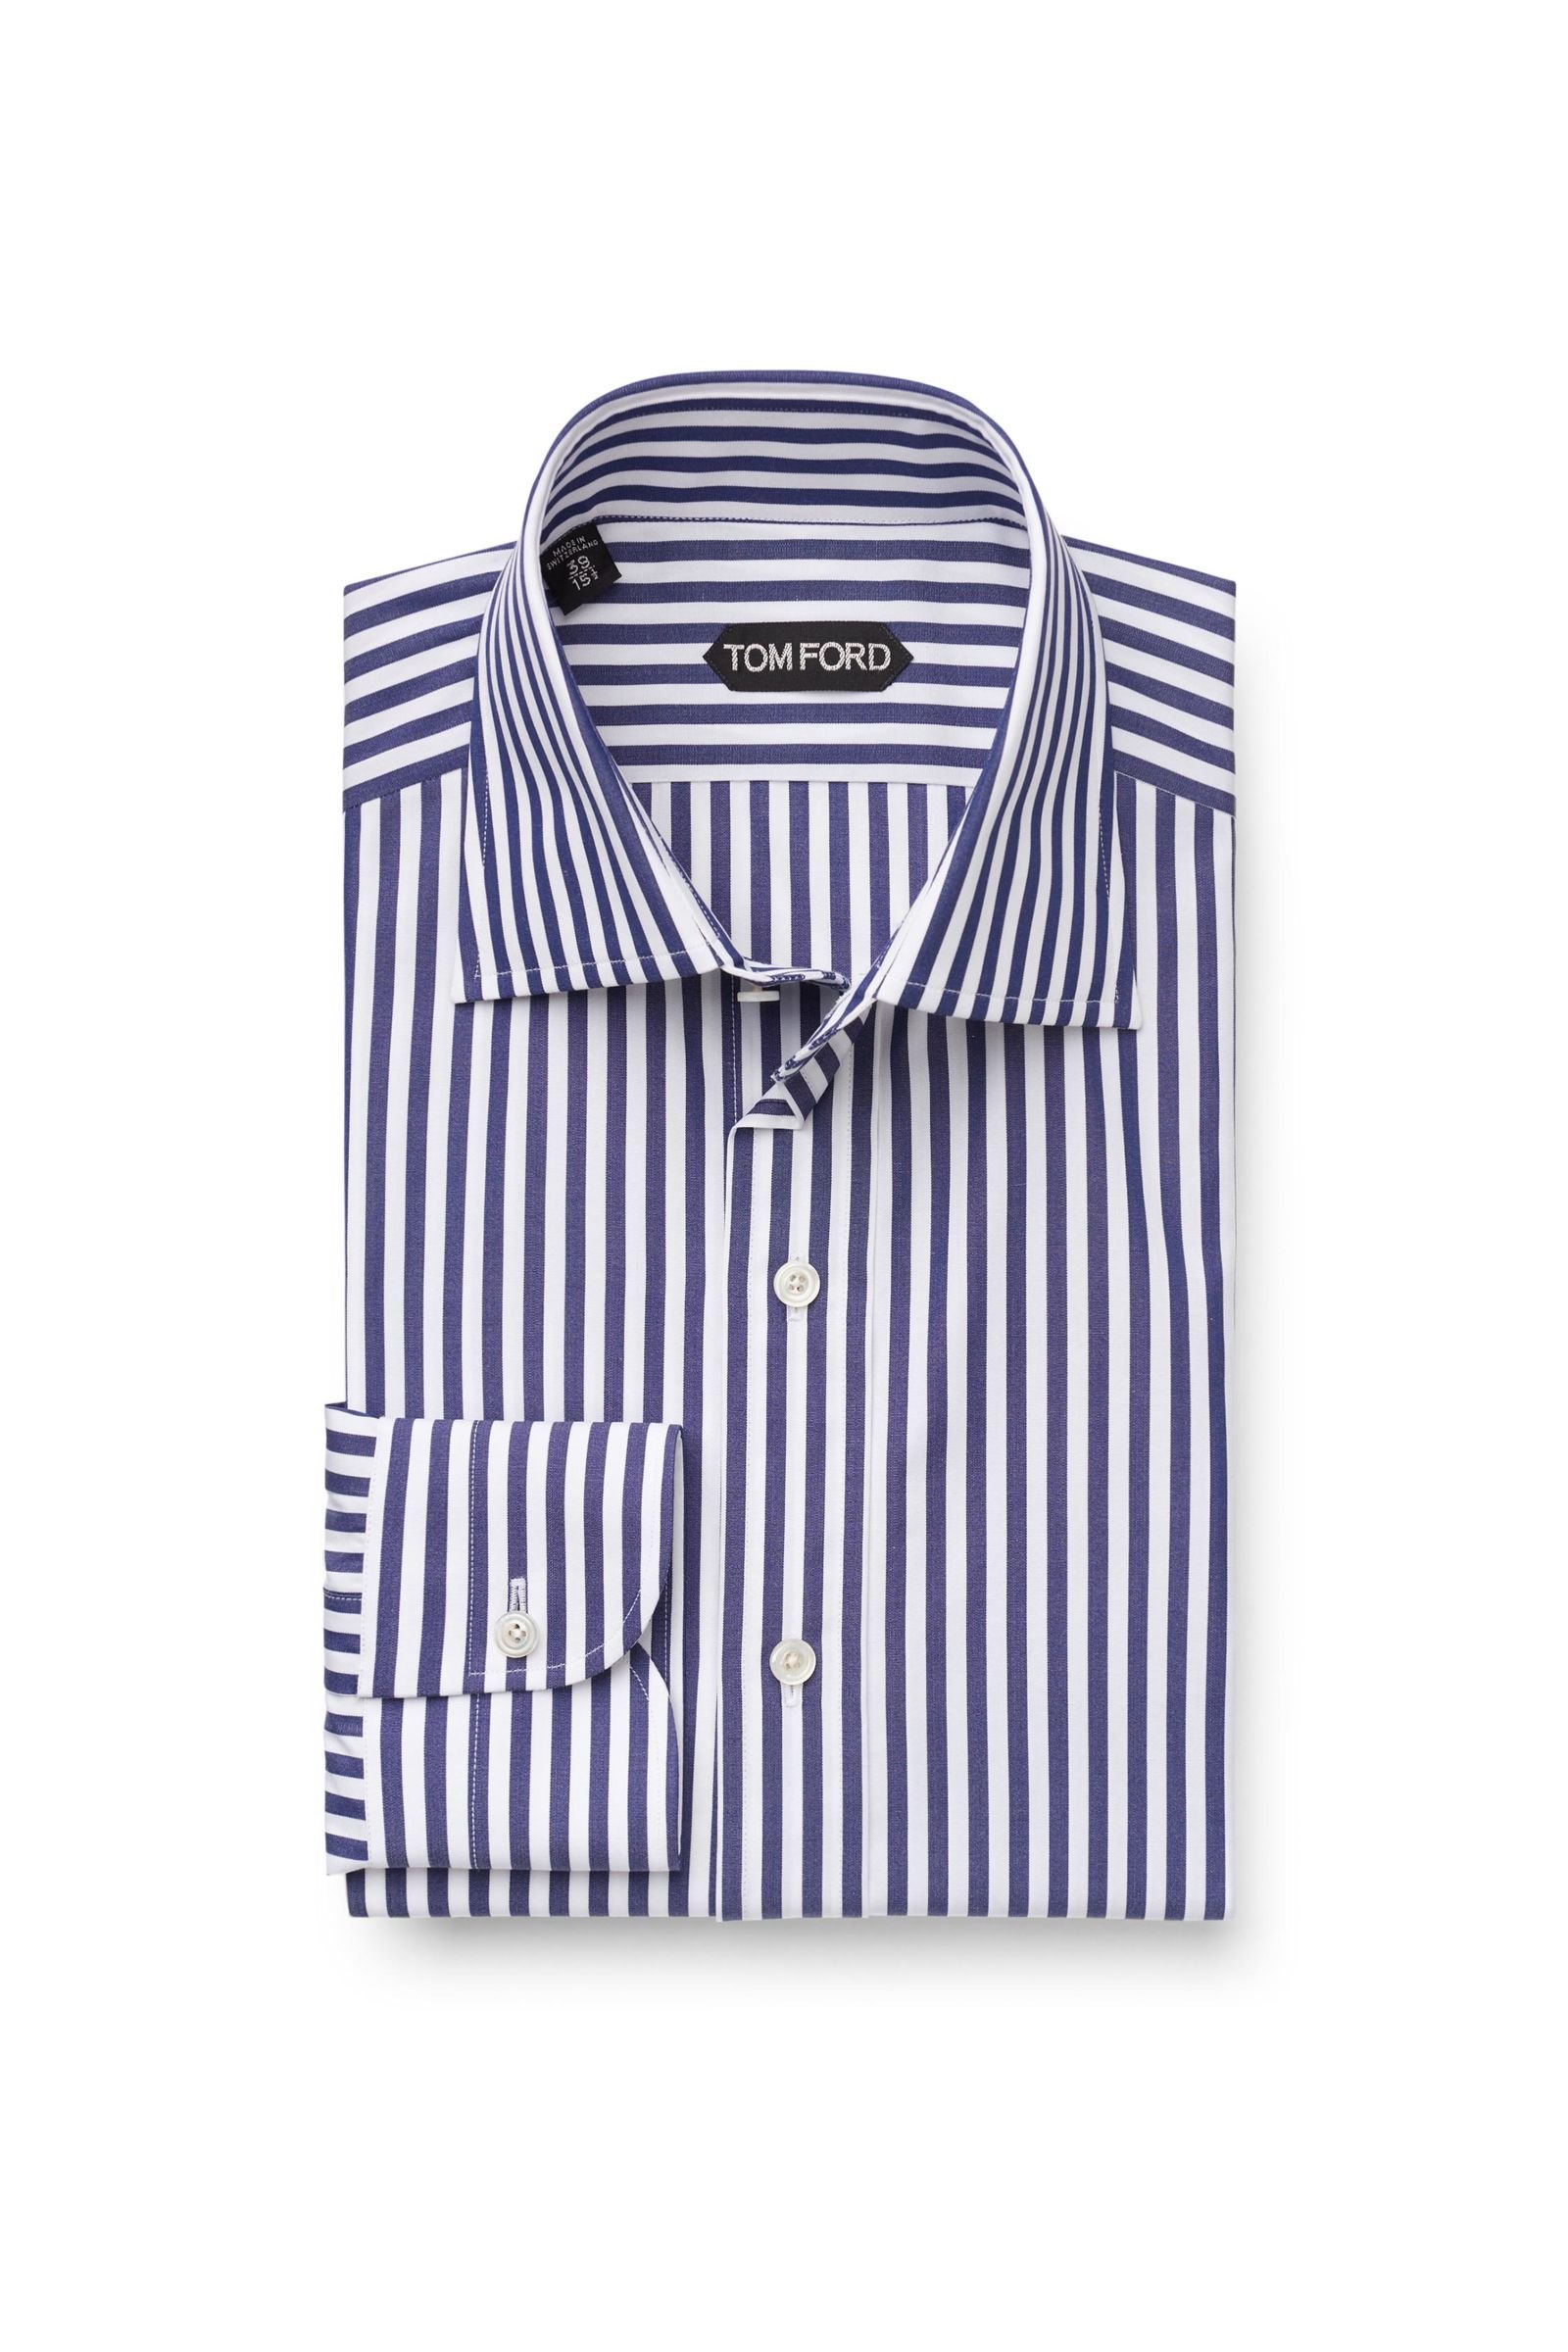 Business shirt Kent collar navy striped